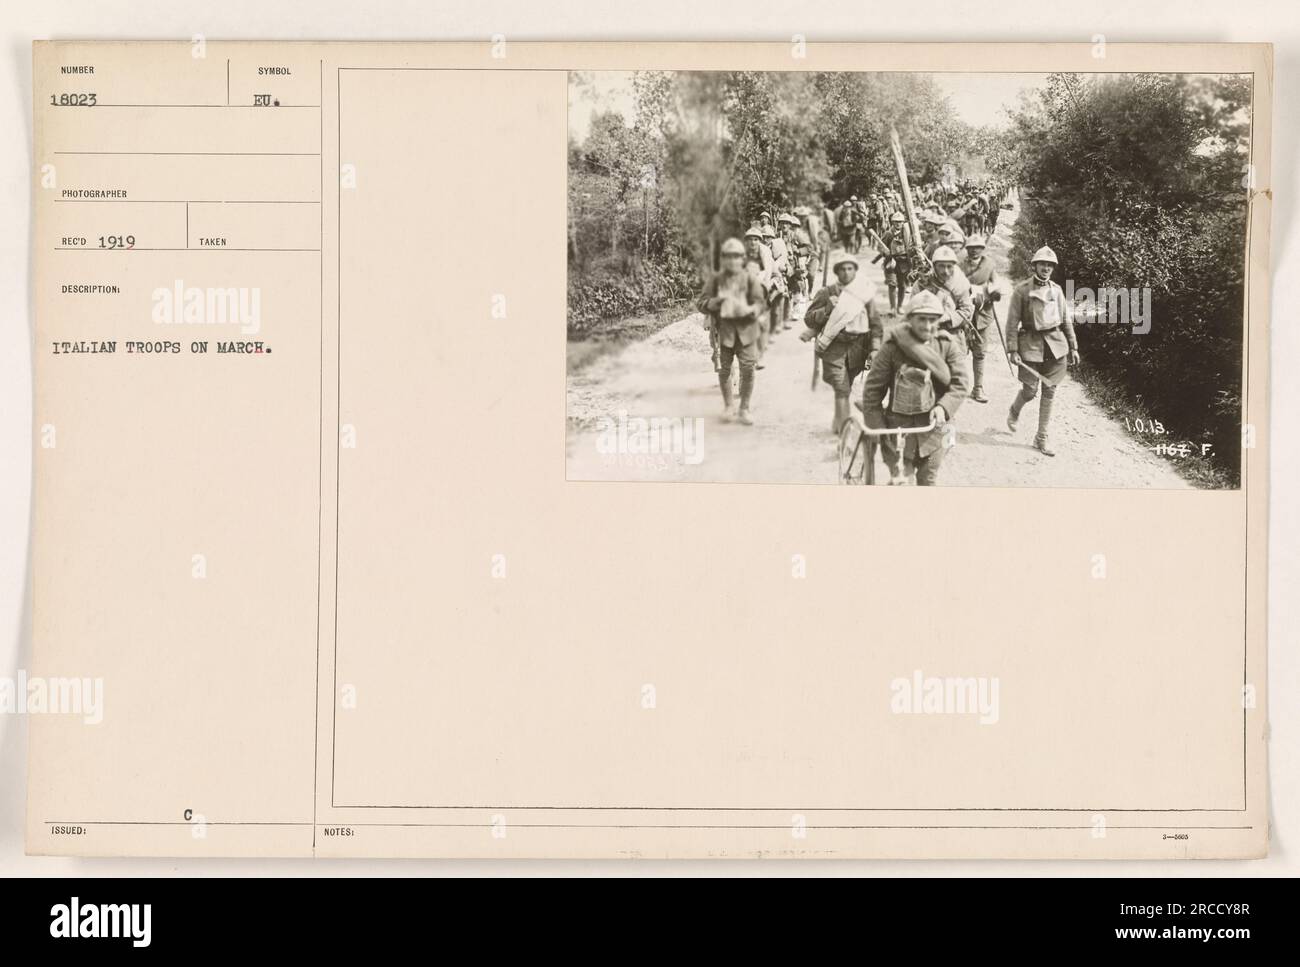 Italienische Truppen marschierten im Ersten Weltkrieg. Man sieht die Soldaten mit ihren Waffen in einer disziplinierten Formation laufen. Dieses Foto wurde 1919 aufgenommen und ist Teil einer Serie, die amerikanische Militäraktionen während des Krieges dokumentiert. Das Bild trägt die Bezeichnung '111-SC-18023' und wird als '188VED' beschrieben mit dem Hinweis: 'HAT ITALIENISCHE TRUPPEN AM MÄRZ ENTFÜHRT. C-SYMBOL EU. ANMERKUNGEN: NE 1167." Stockfoto